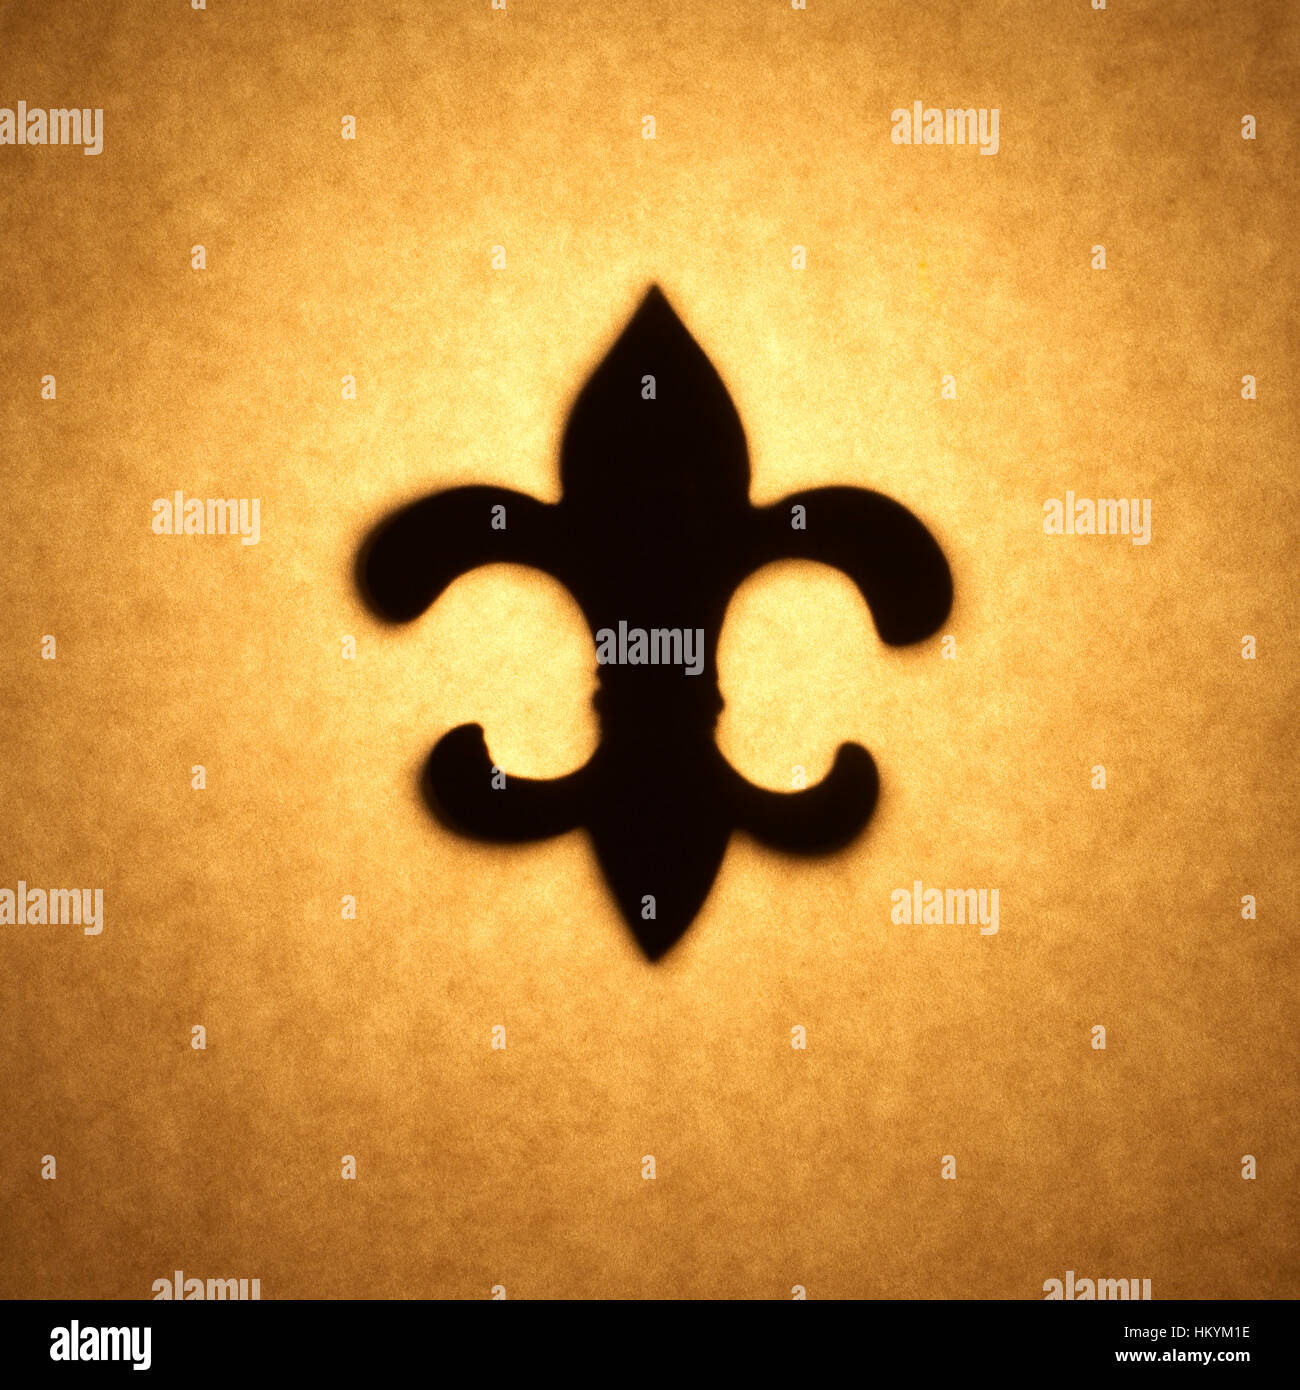 Silhouette retroilluminato di Fleur de Lis forma tagliata fuori contro il tono bruno carta, con spot evidenziare. Foto Stock